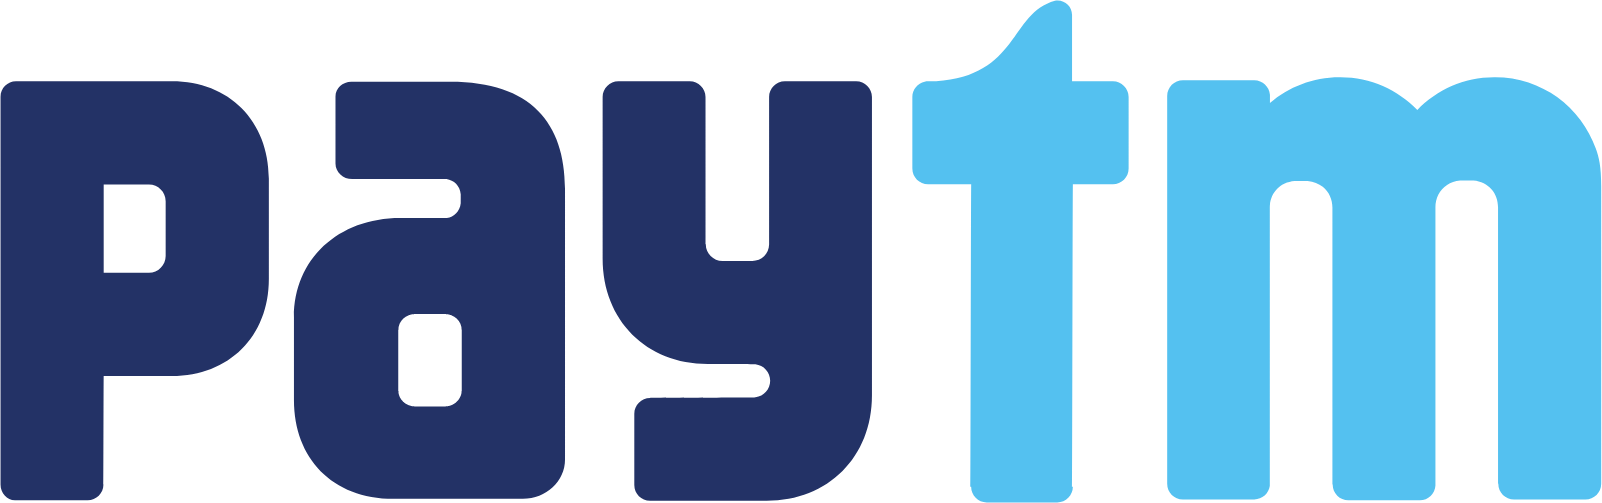 Paytm logo large (transparent PNG)